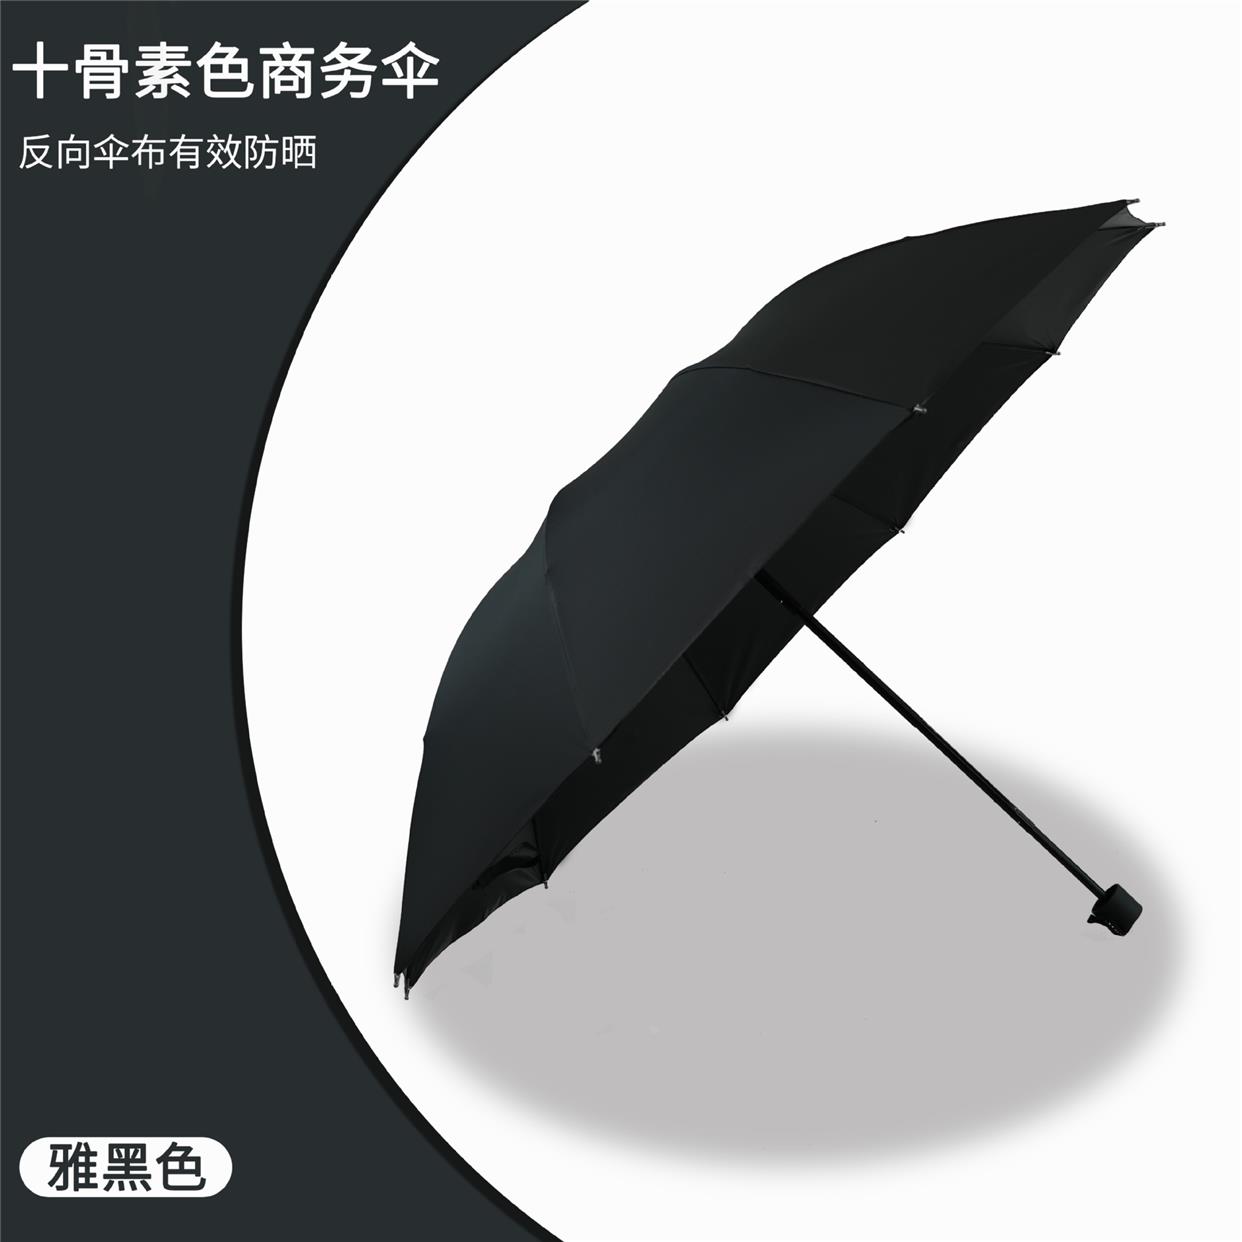 商务雨伞大号超大三折手动太阳伞户外加厚男士遮阳伞广告伞